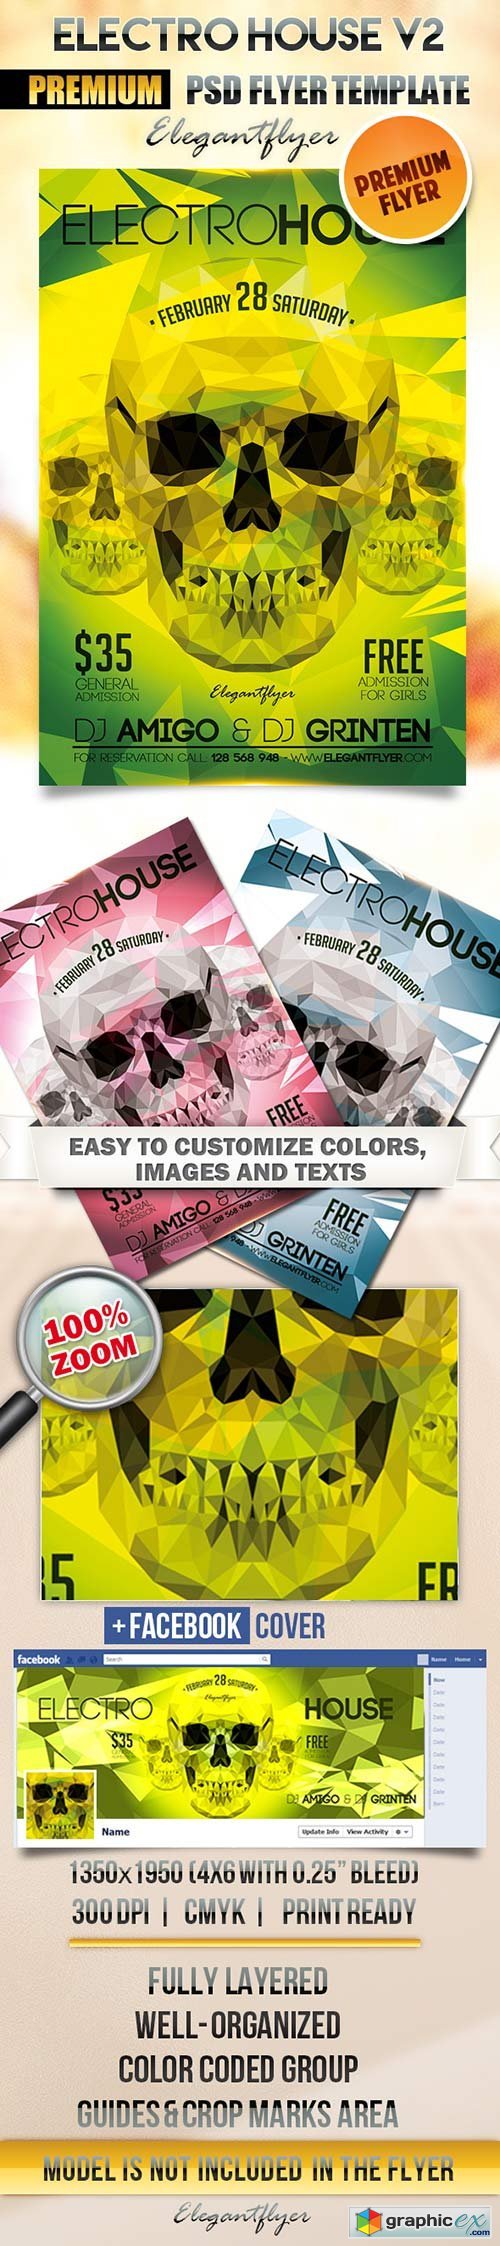 Electro House V2 Flyer PSD Template + Facebook Cover